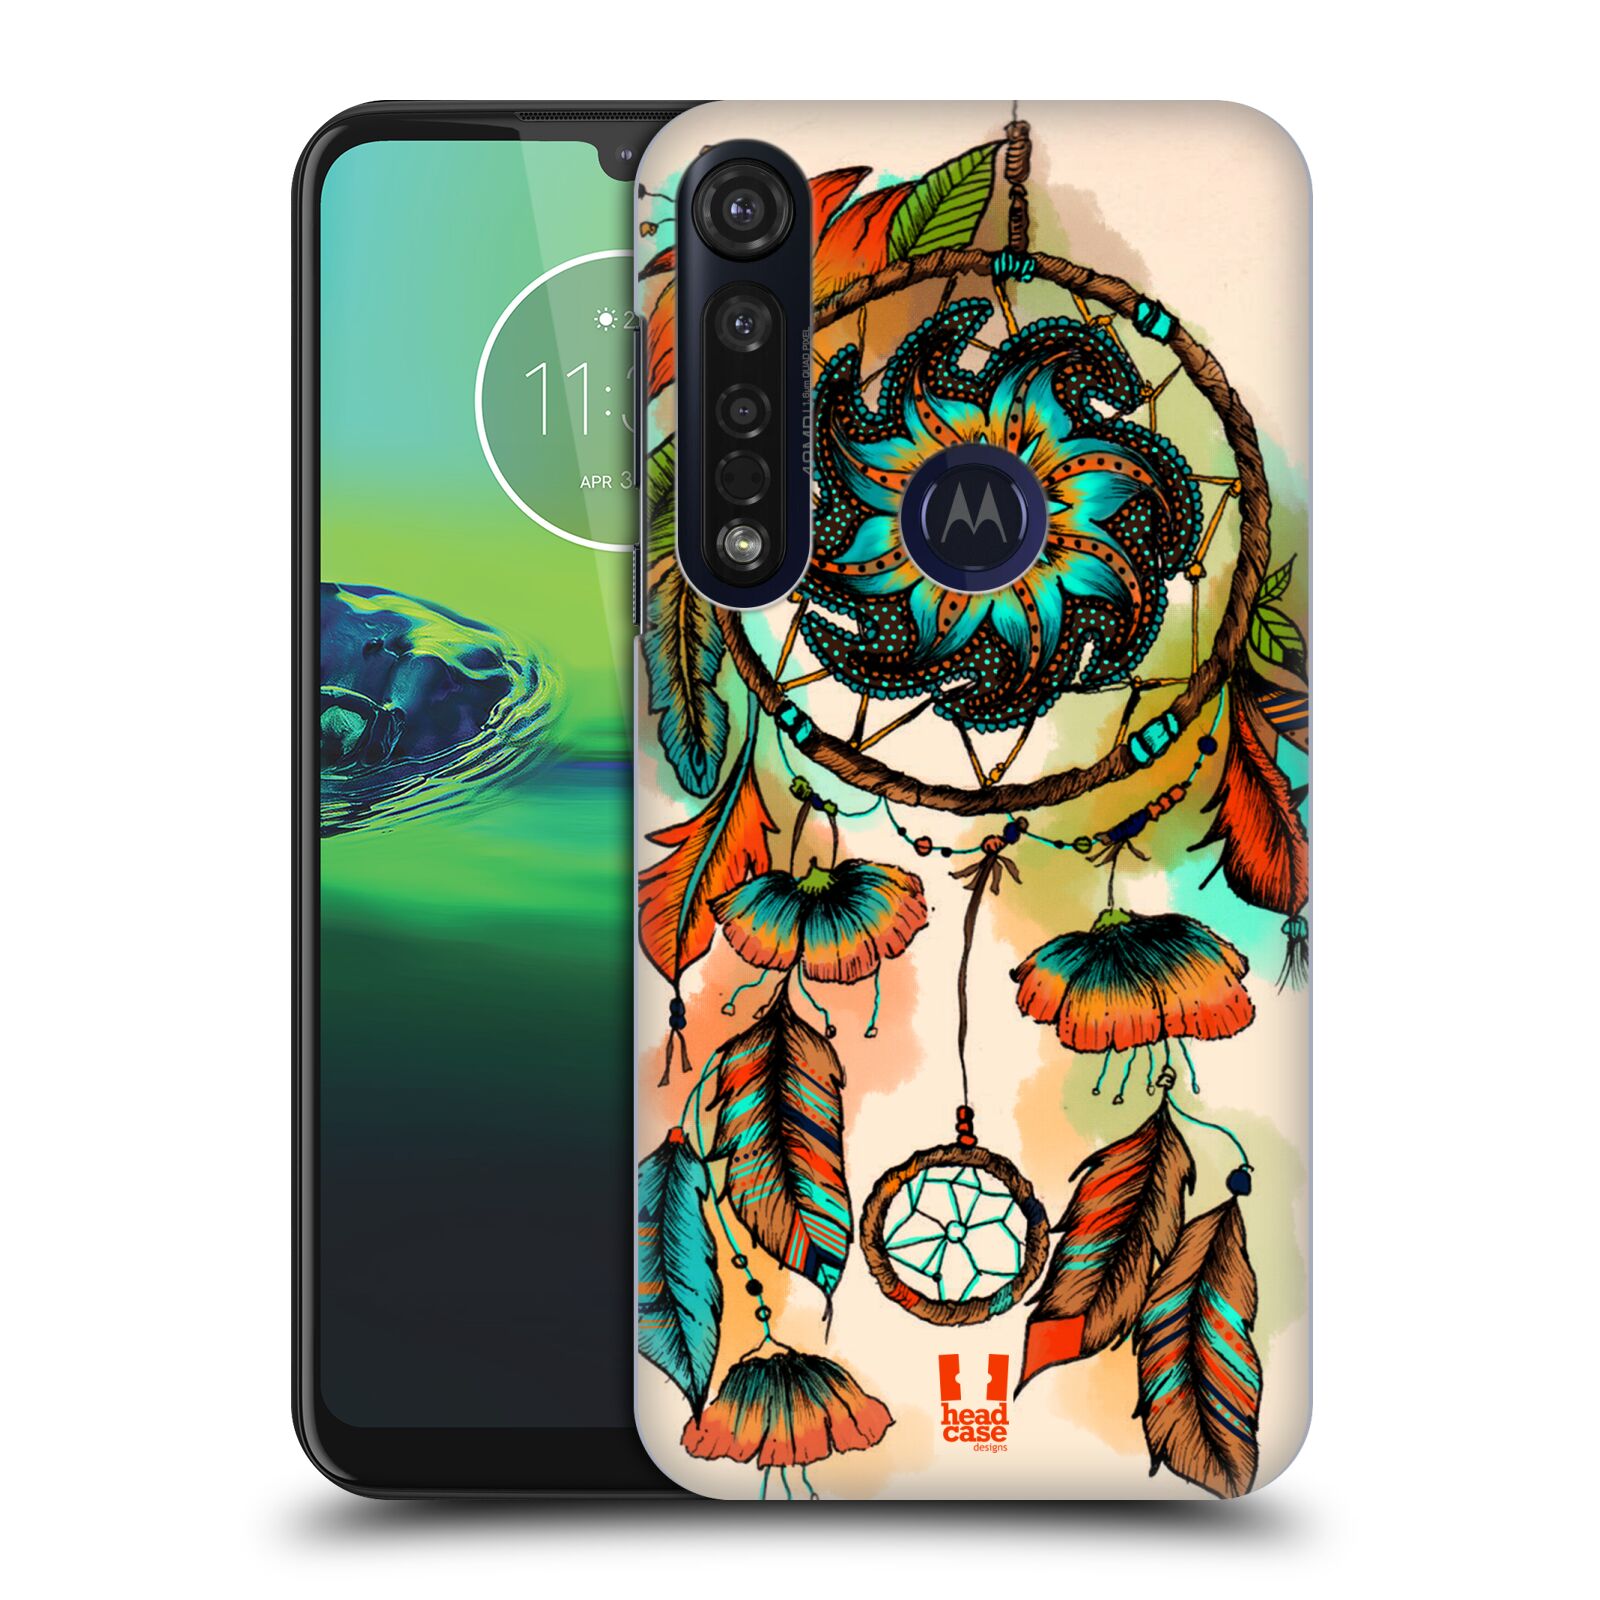 Pouzdro na mobil Motorola Moto G8 PLUS - HEAD CASE - vzor Květy lapač snů merňka oranžová